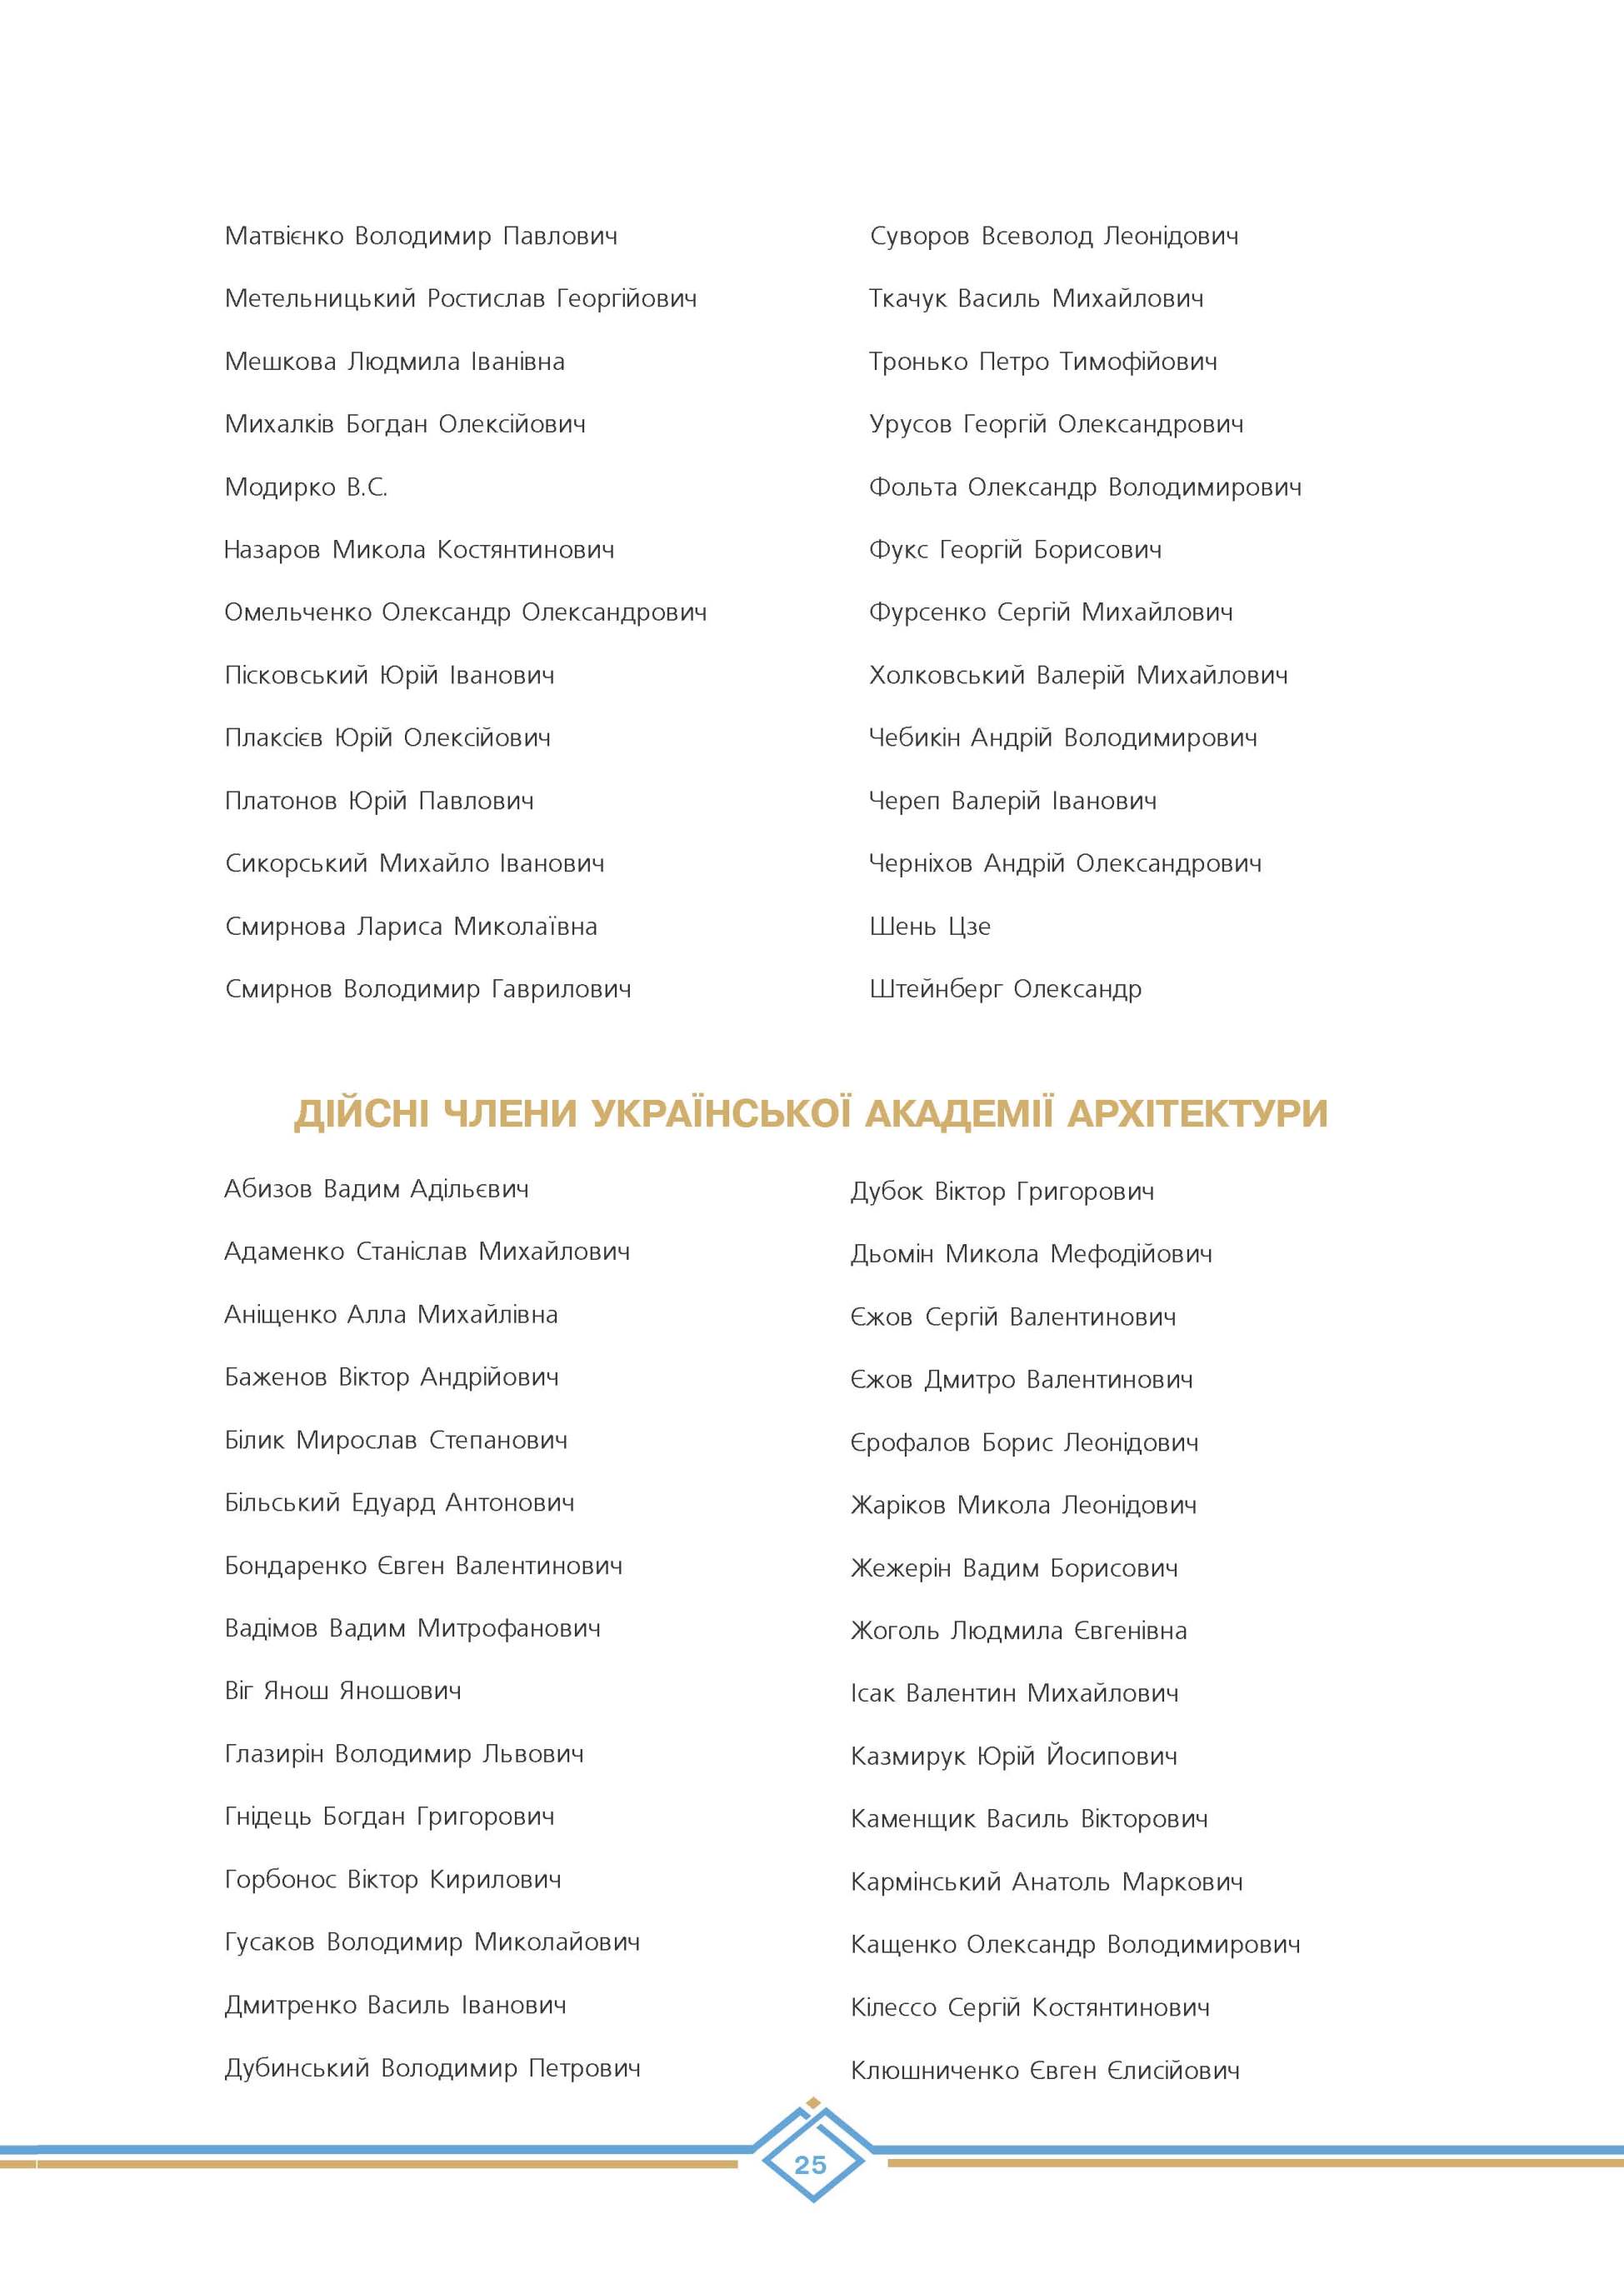 Дійсні члени Української академії архітектури